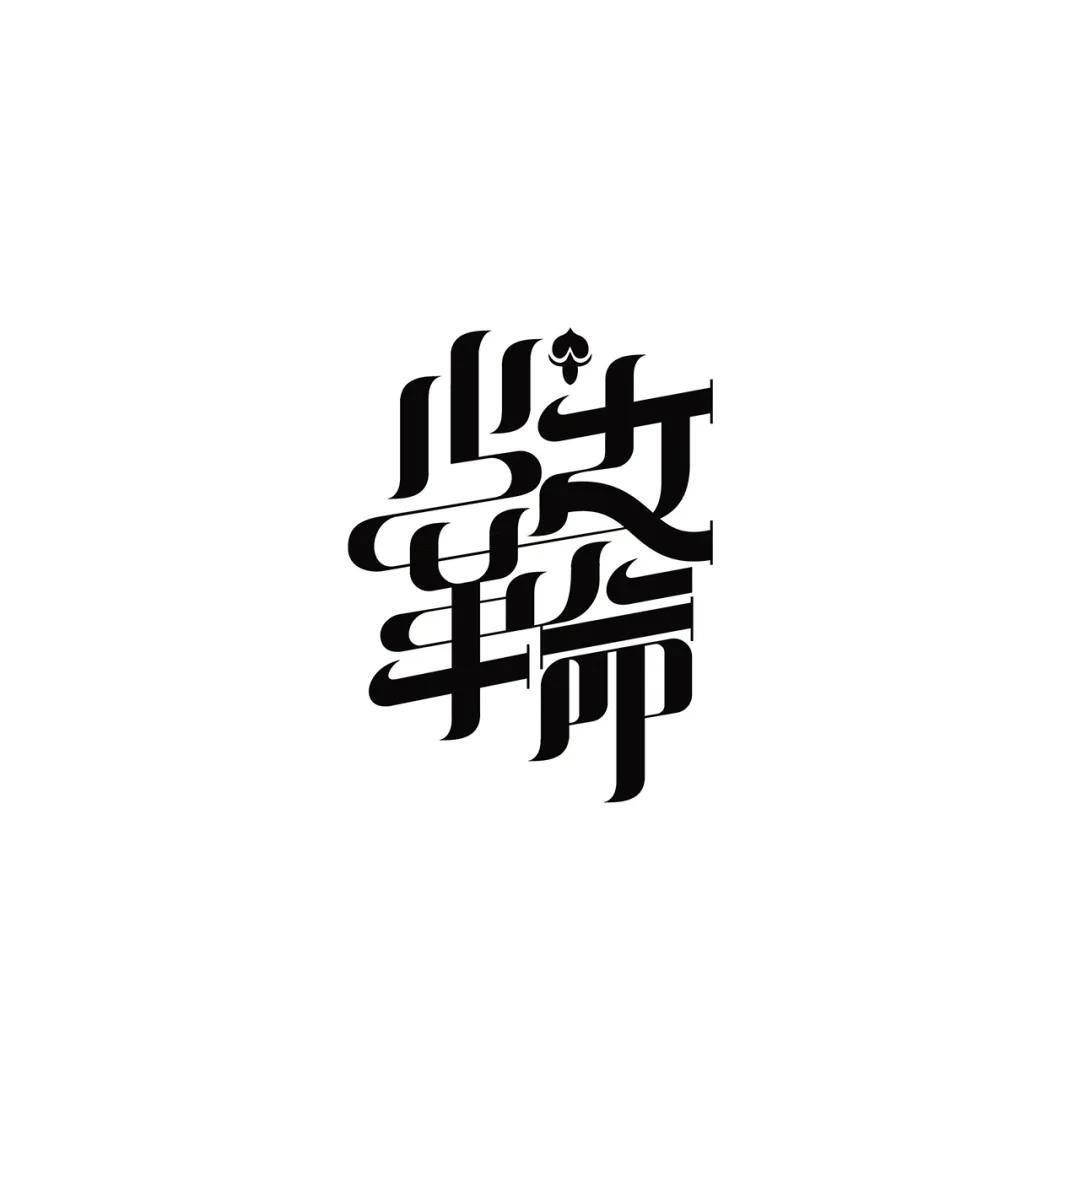 平面设计干货汉字字体设计的组合技巧和美感